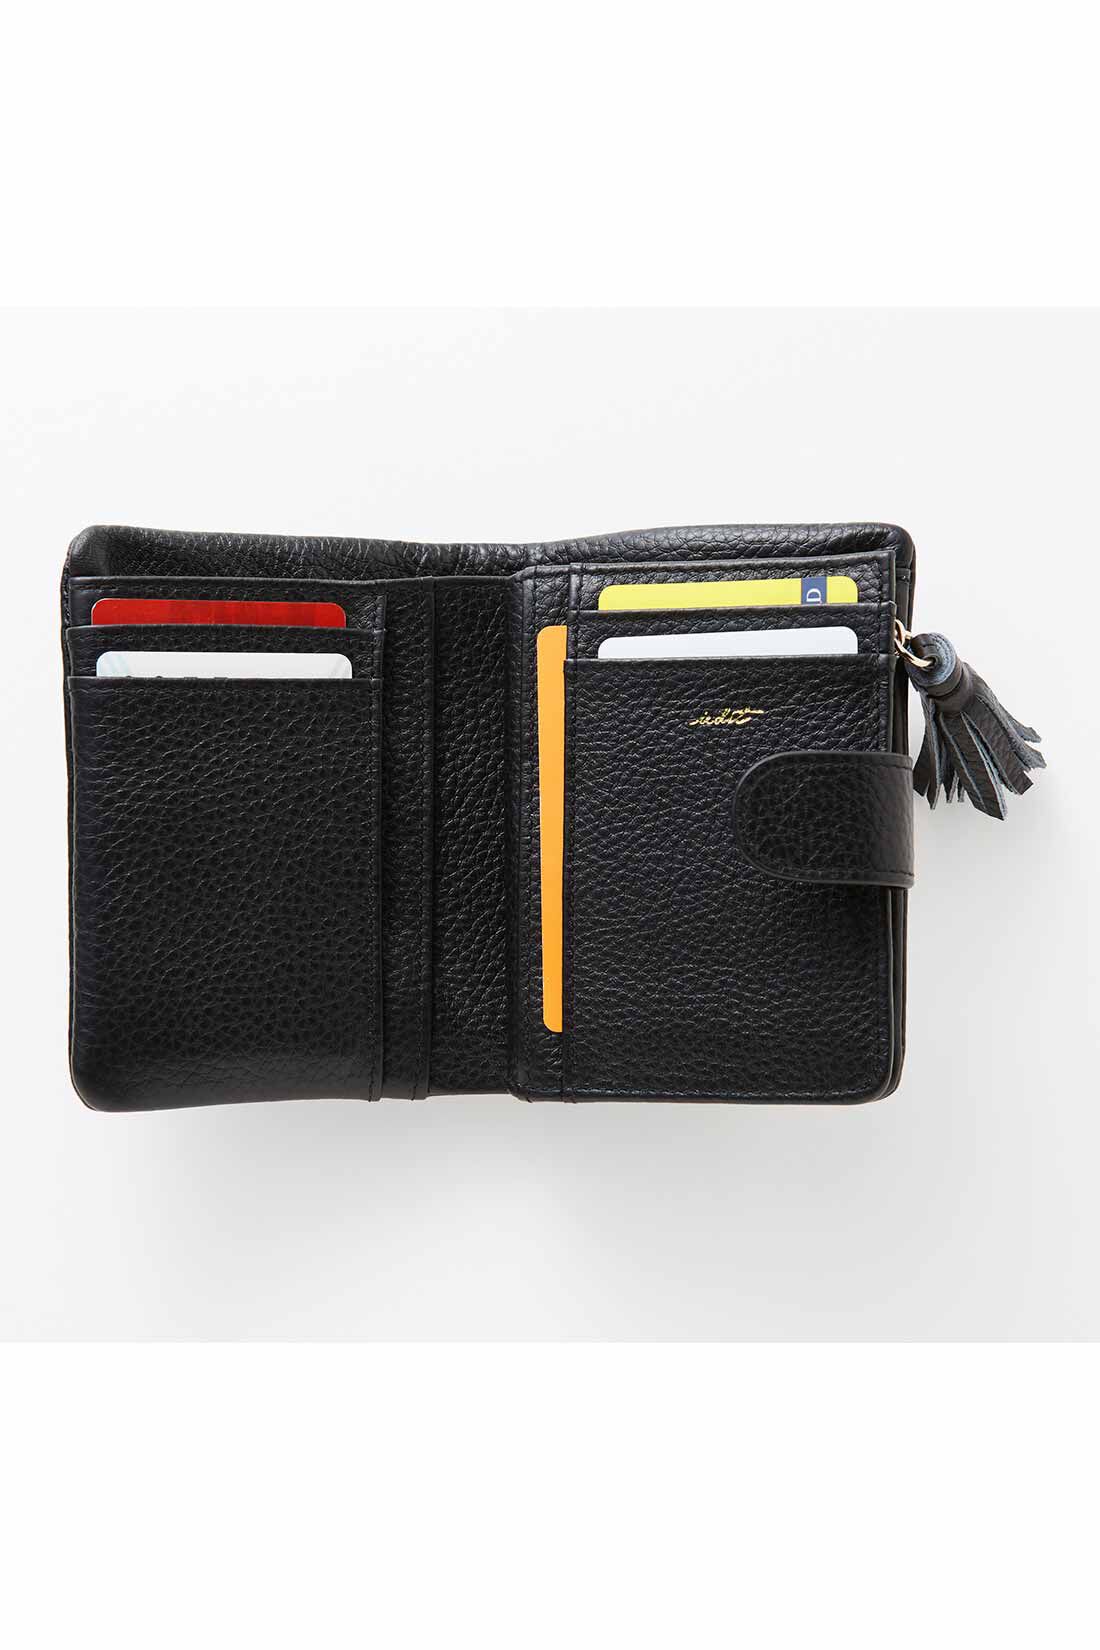 イディット|IEDIT[イディット]　くったり本革素材できれいめ二つ折り財布〈ブラック〉|カードはたっぷり8枚収納可。